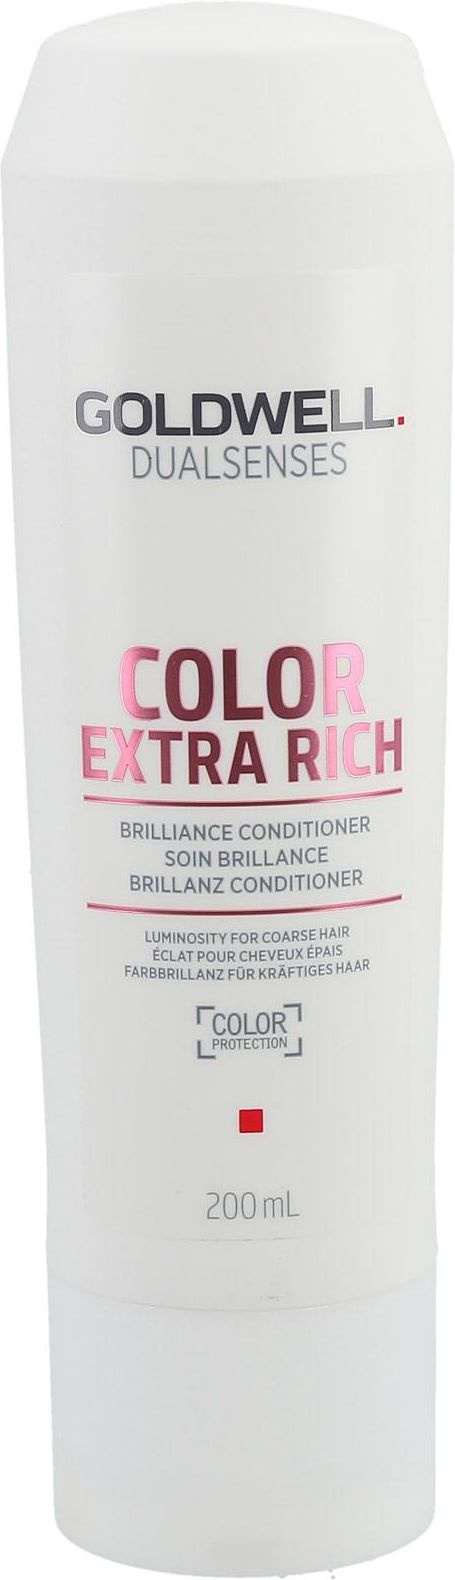 goldwell szampon do włosów farbowanych opinie